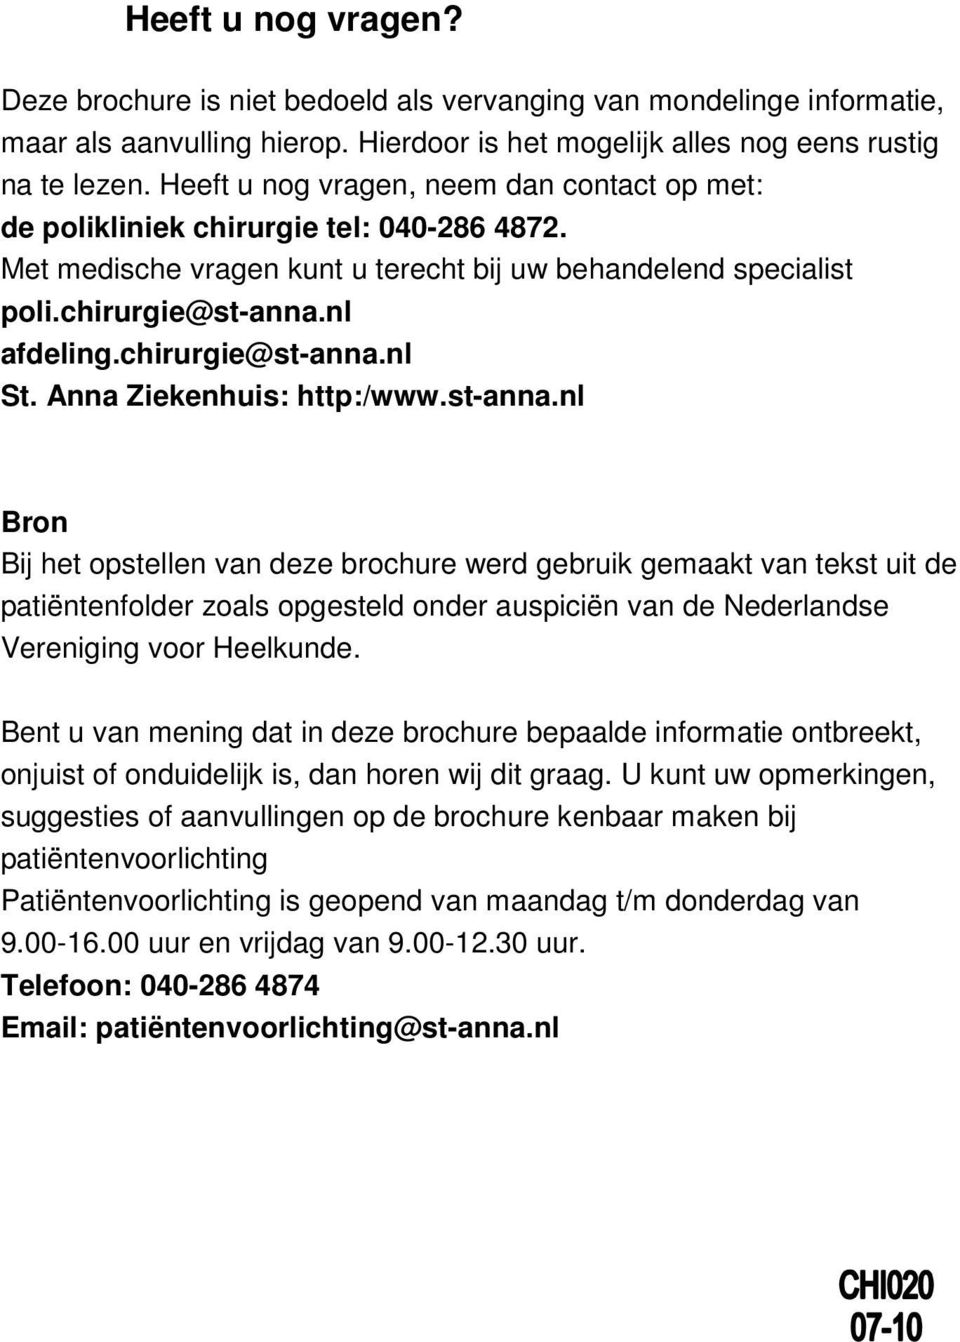 chirurgie@st-anna.nl St. Anna Ziekenhuis: http:/www.st-anna.nl Bron Bij het opstellen van deze brochure werd gebruik gemaakt van tekst uit de patiëntenfolder zoals opgesteld onder auspiciën van de Nederlandse Vereniging voor Heelkunde.